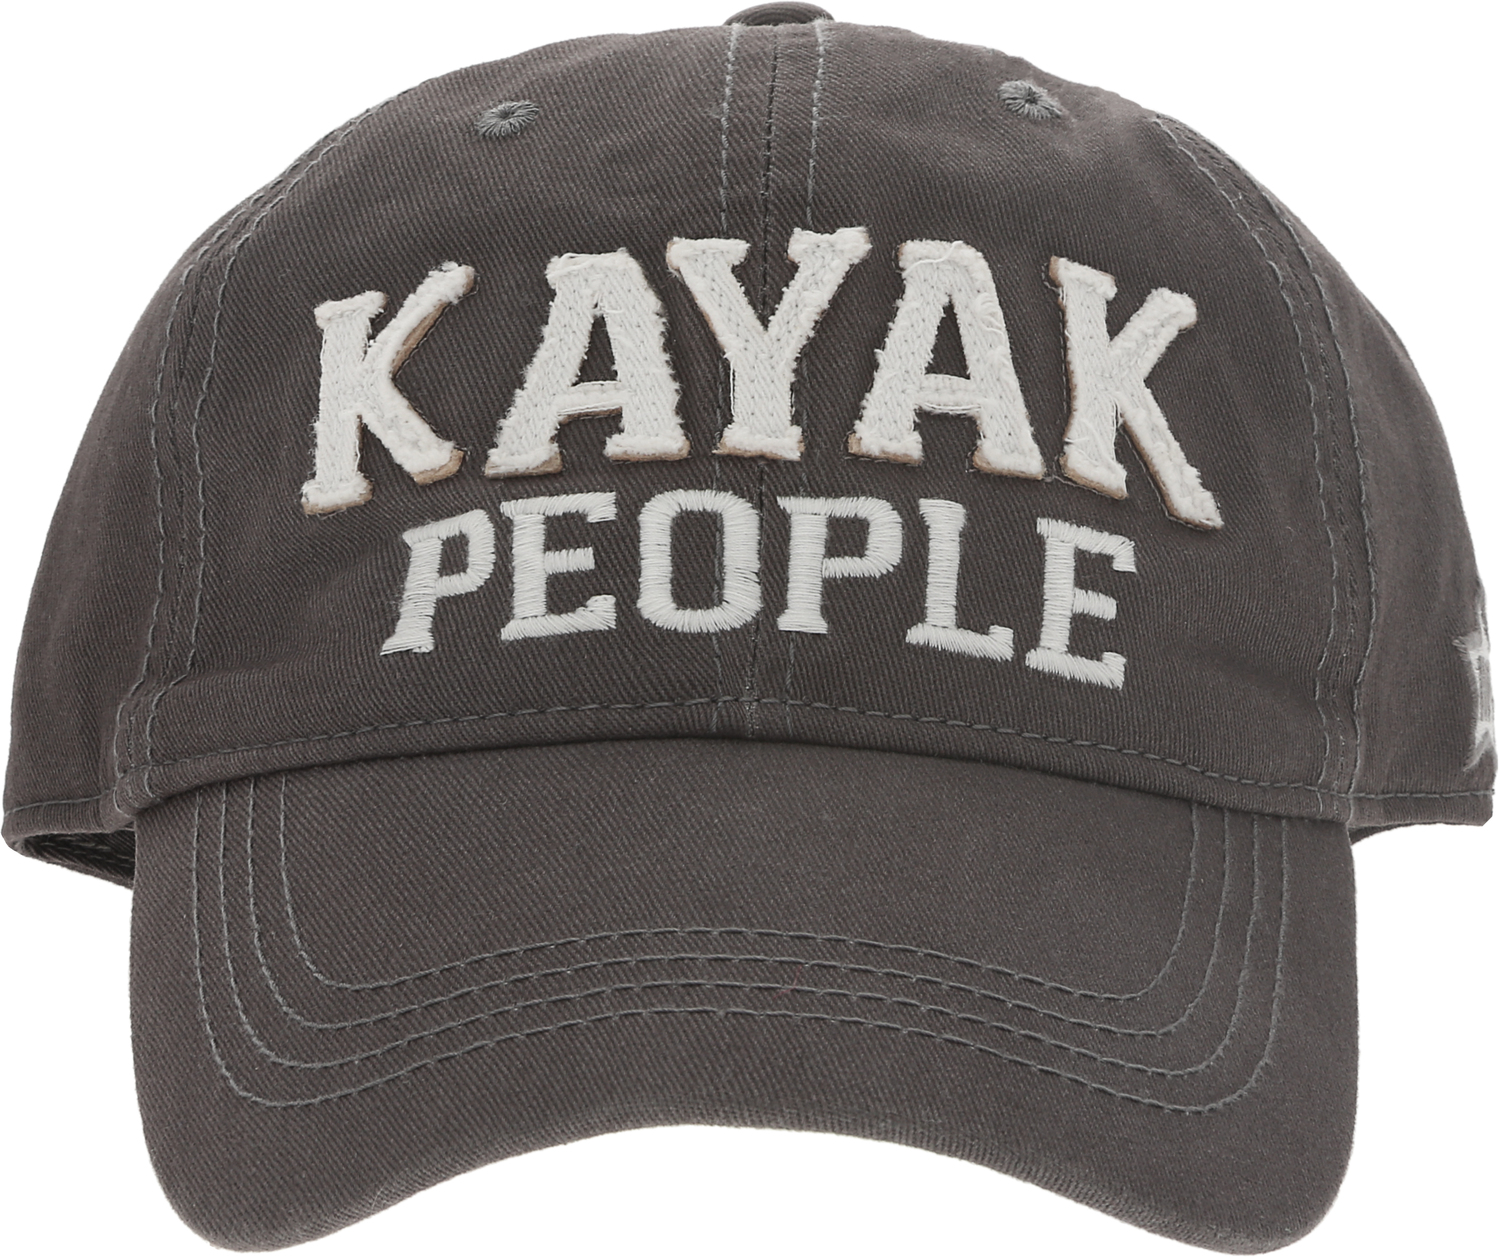 Kayak People by We People - Kayak People - Dark Gray Adjustable Hat